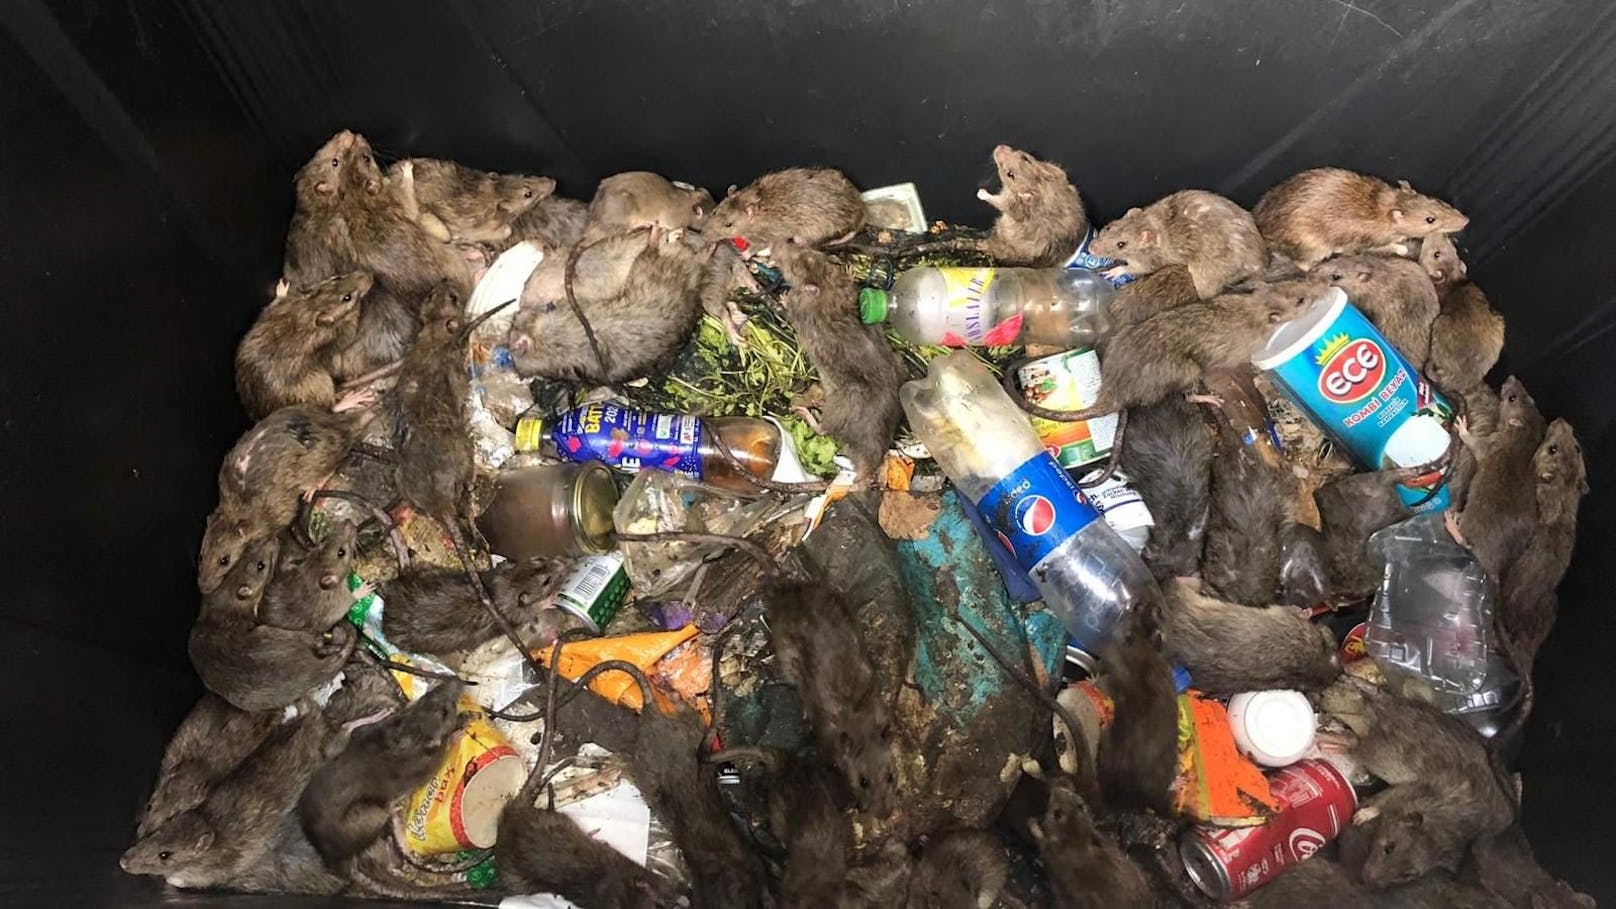 Zahlreiche Ratten tummeln sich in dem Müllcontainer.